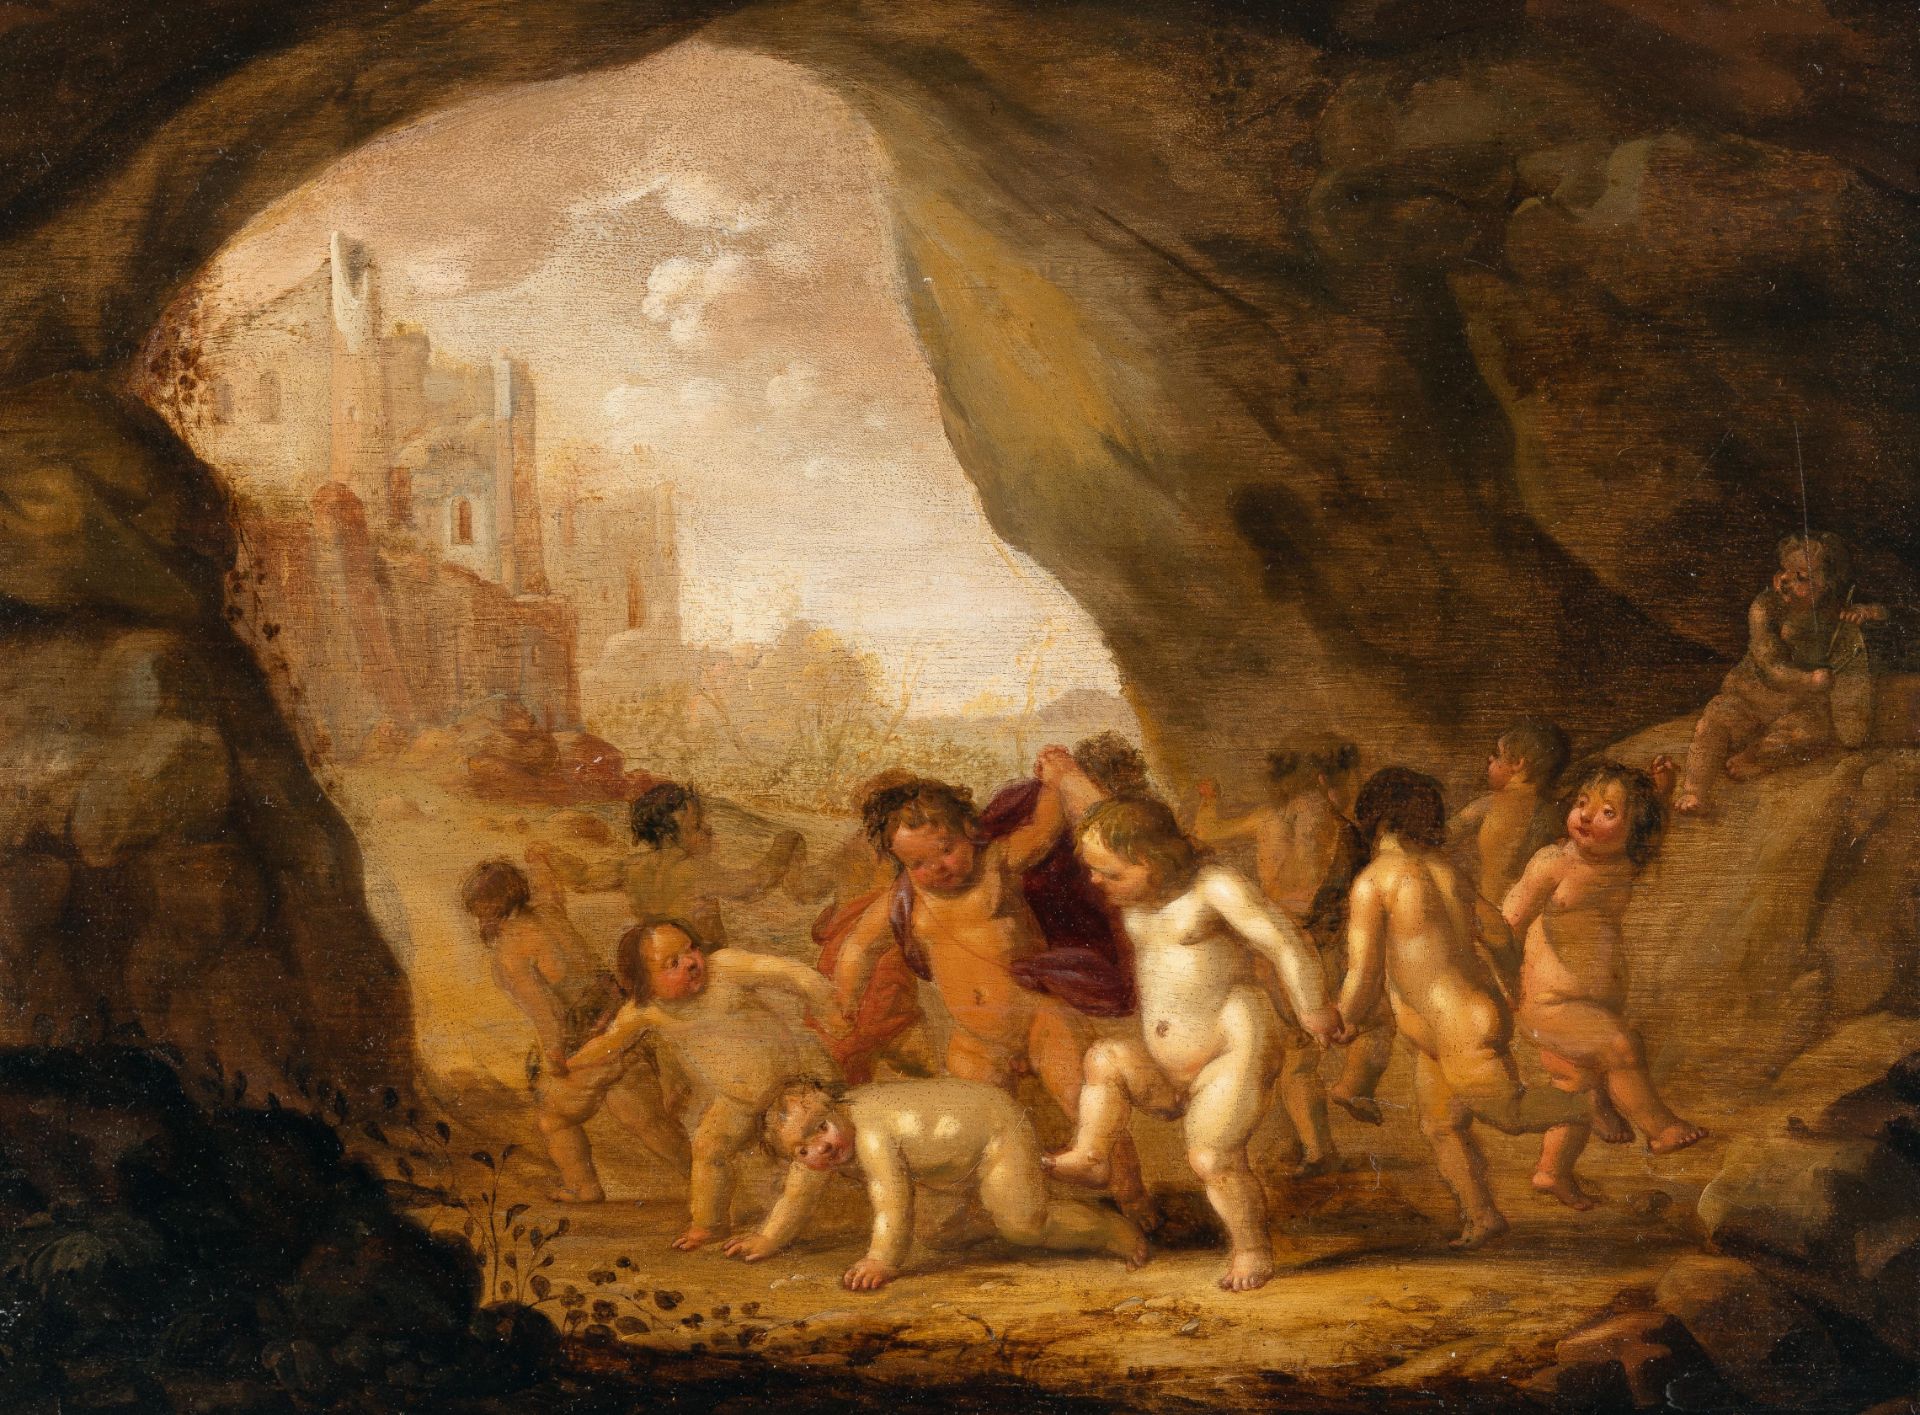 Abraham van Cuylenborch (1620 - Utrecht - 1658) – Puttenreigen in einer Felsgrotte